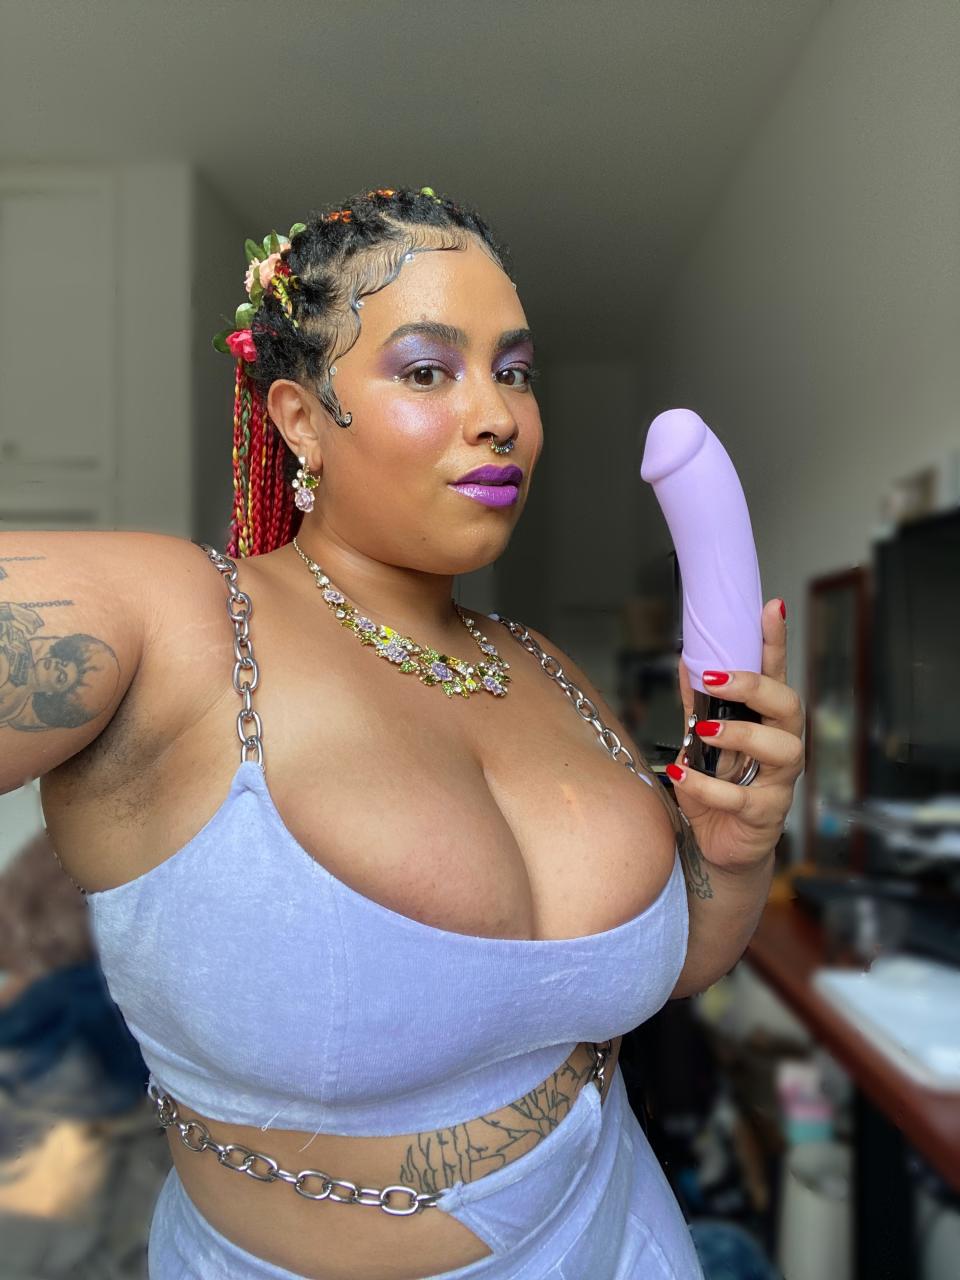 Woman holding pastel purple vibrating dildo